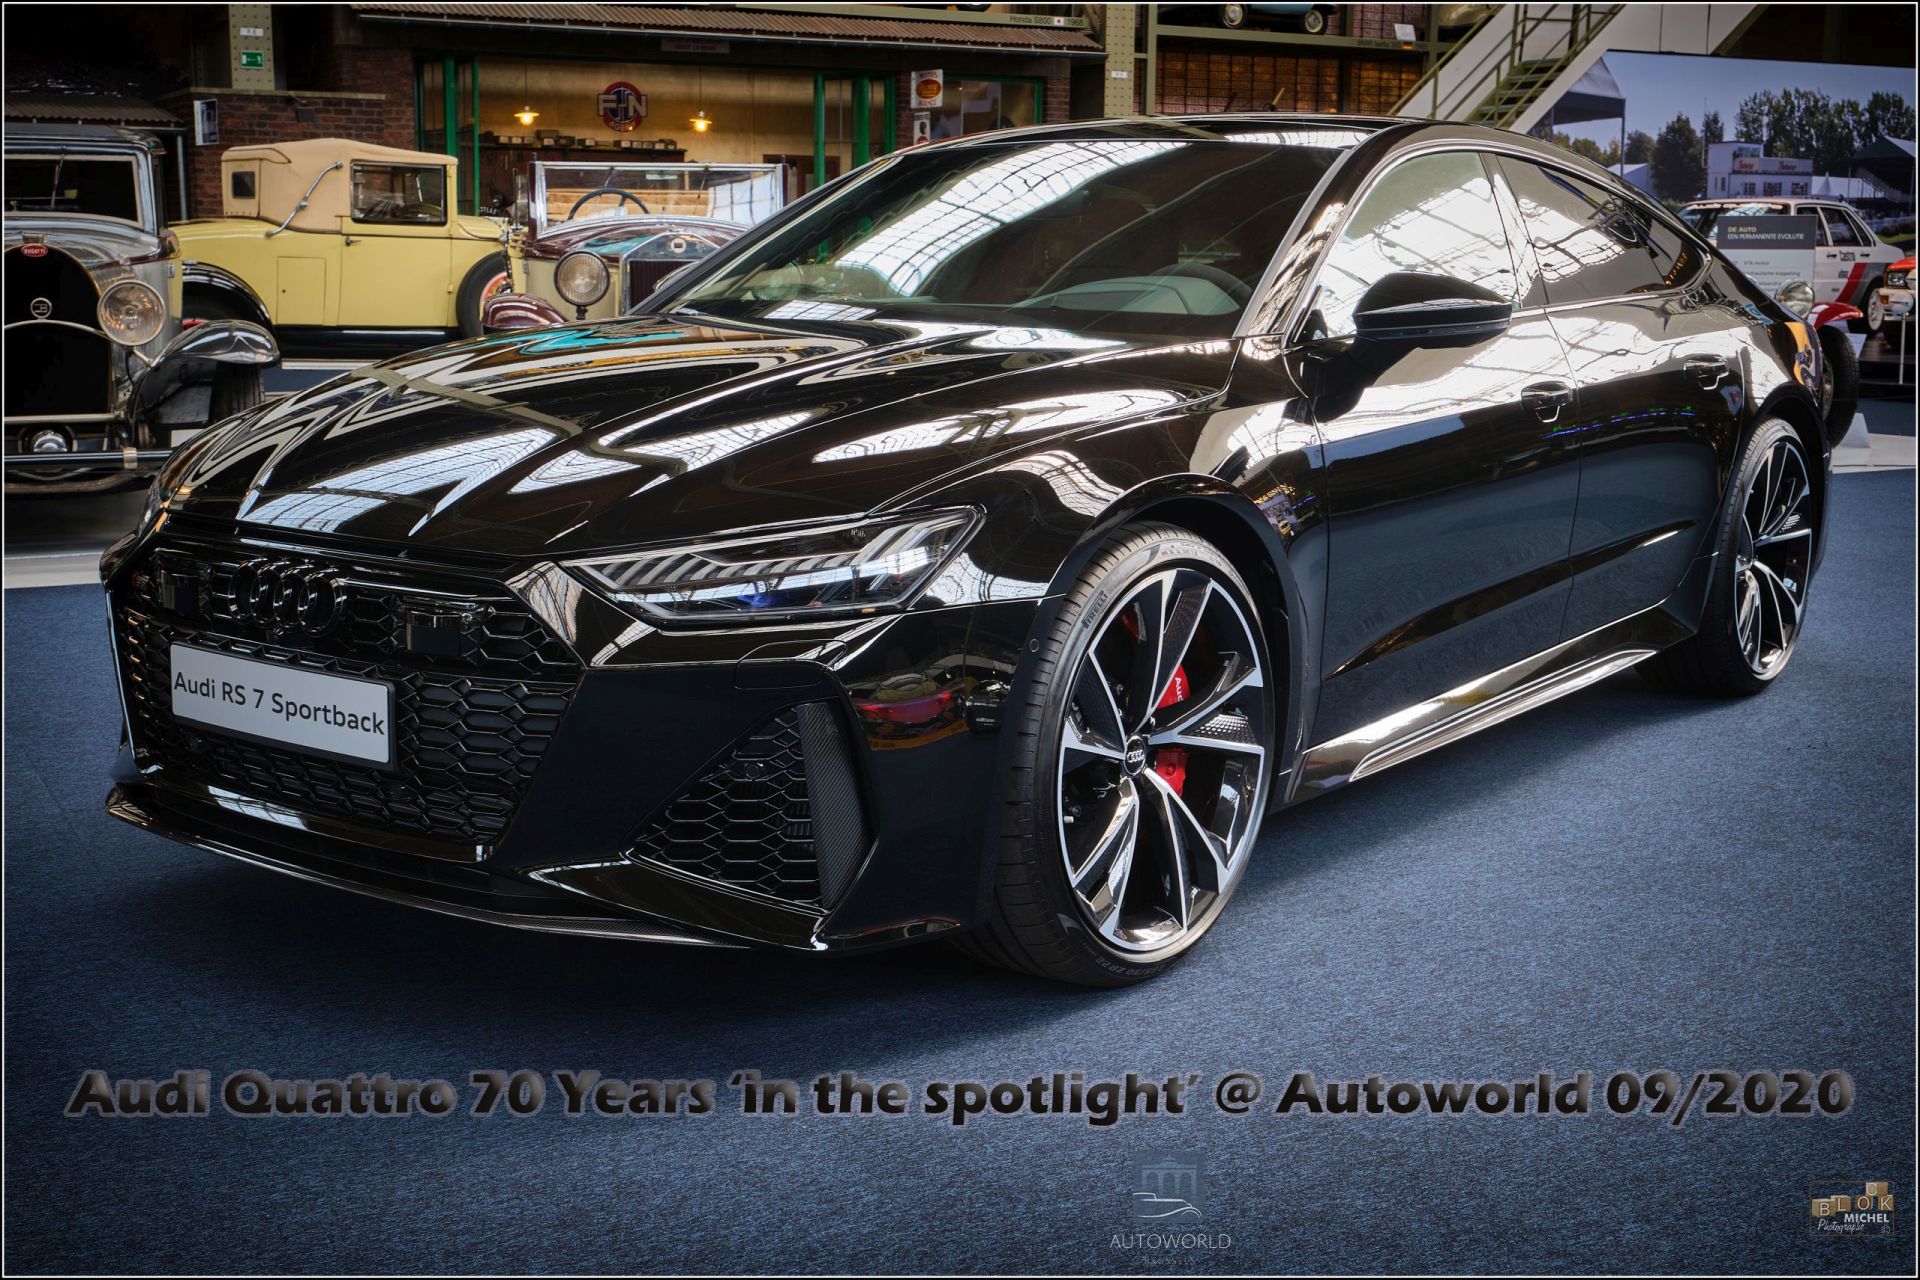 Audi QUATTRO – 70 Years @ Autoworld